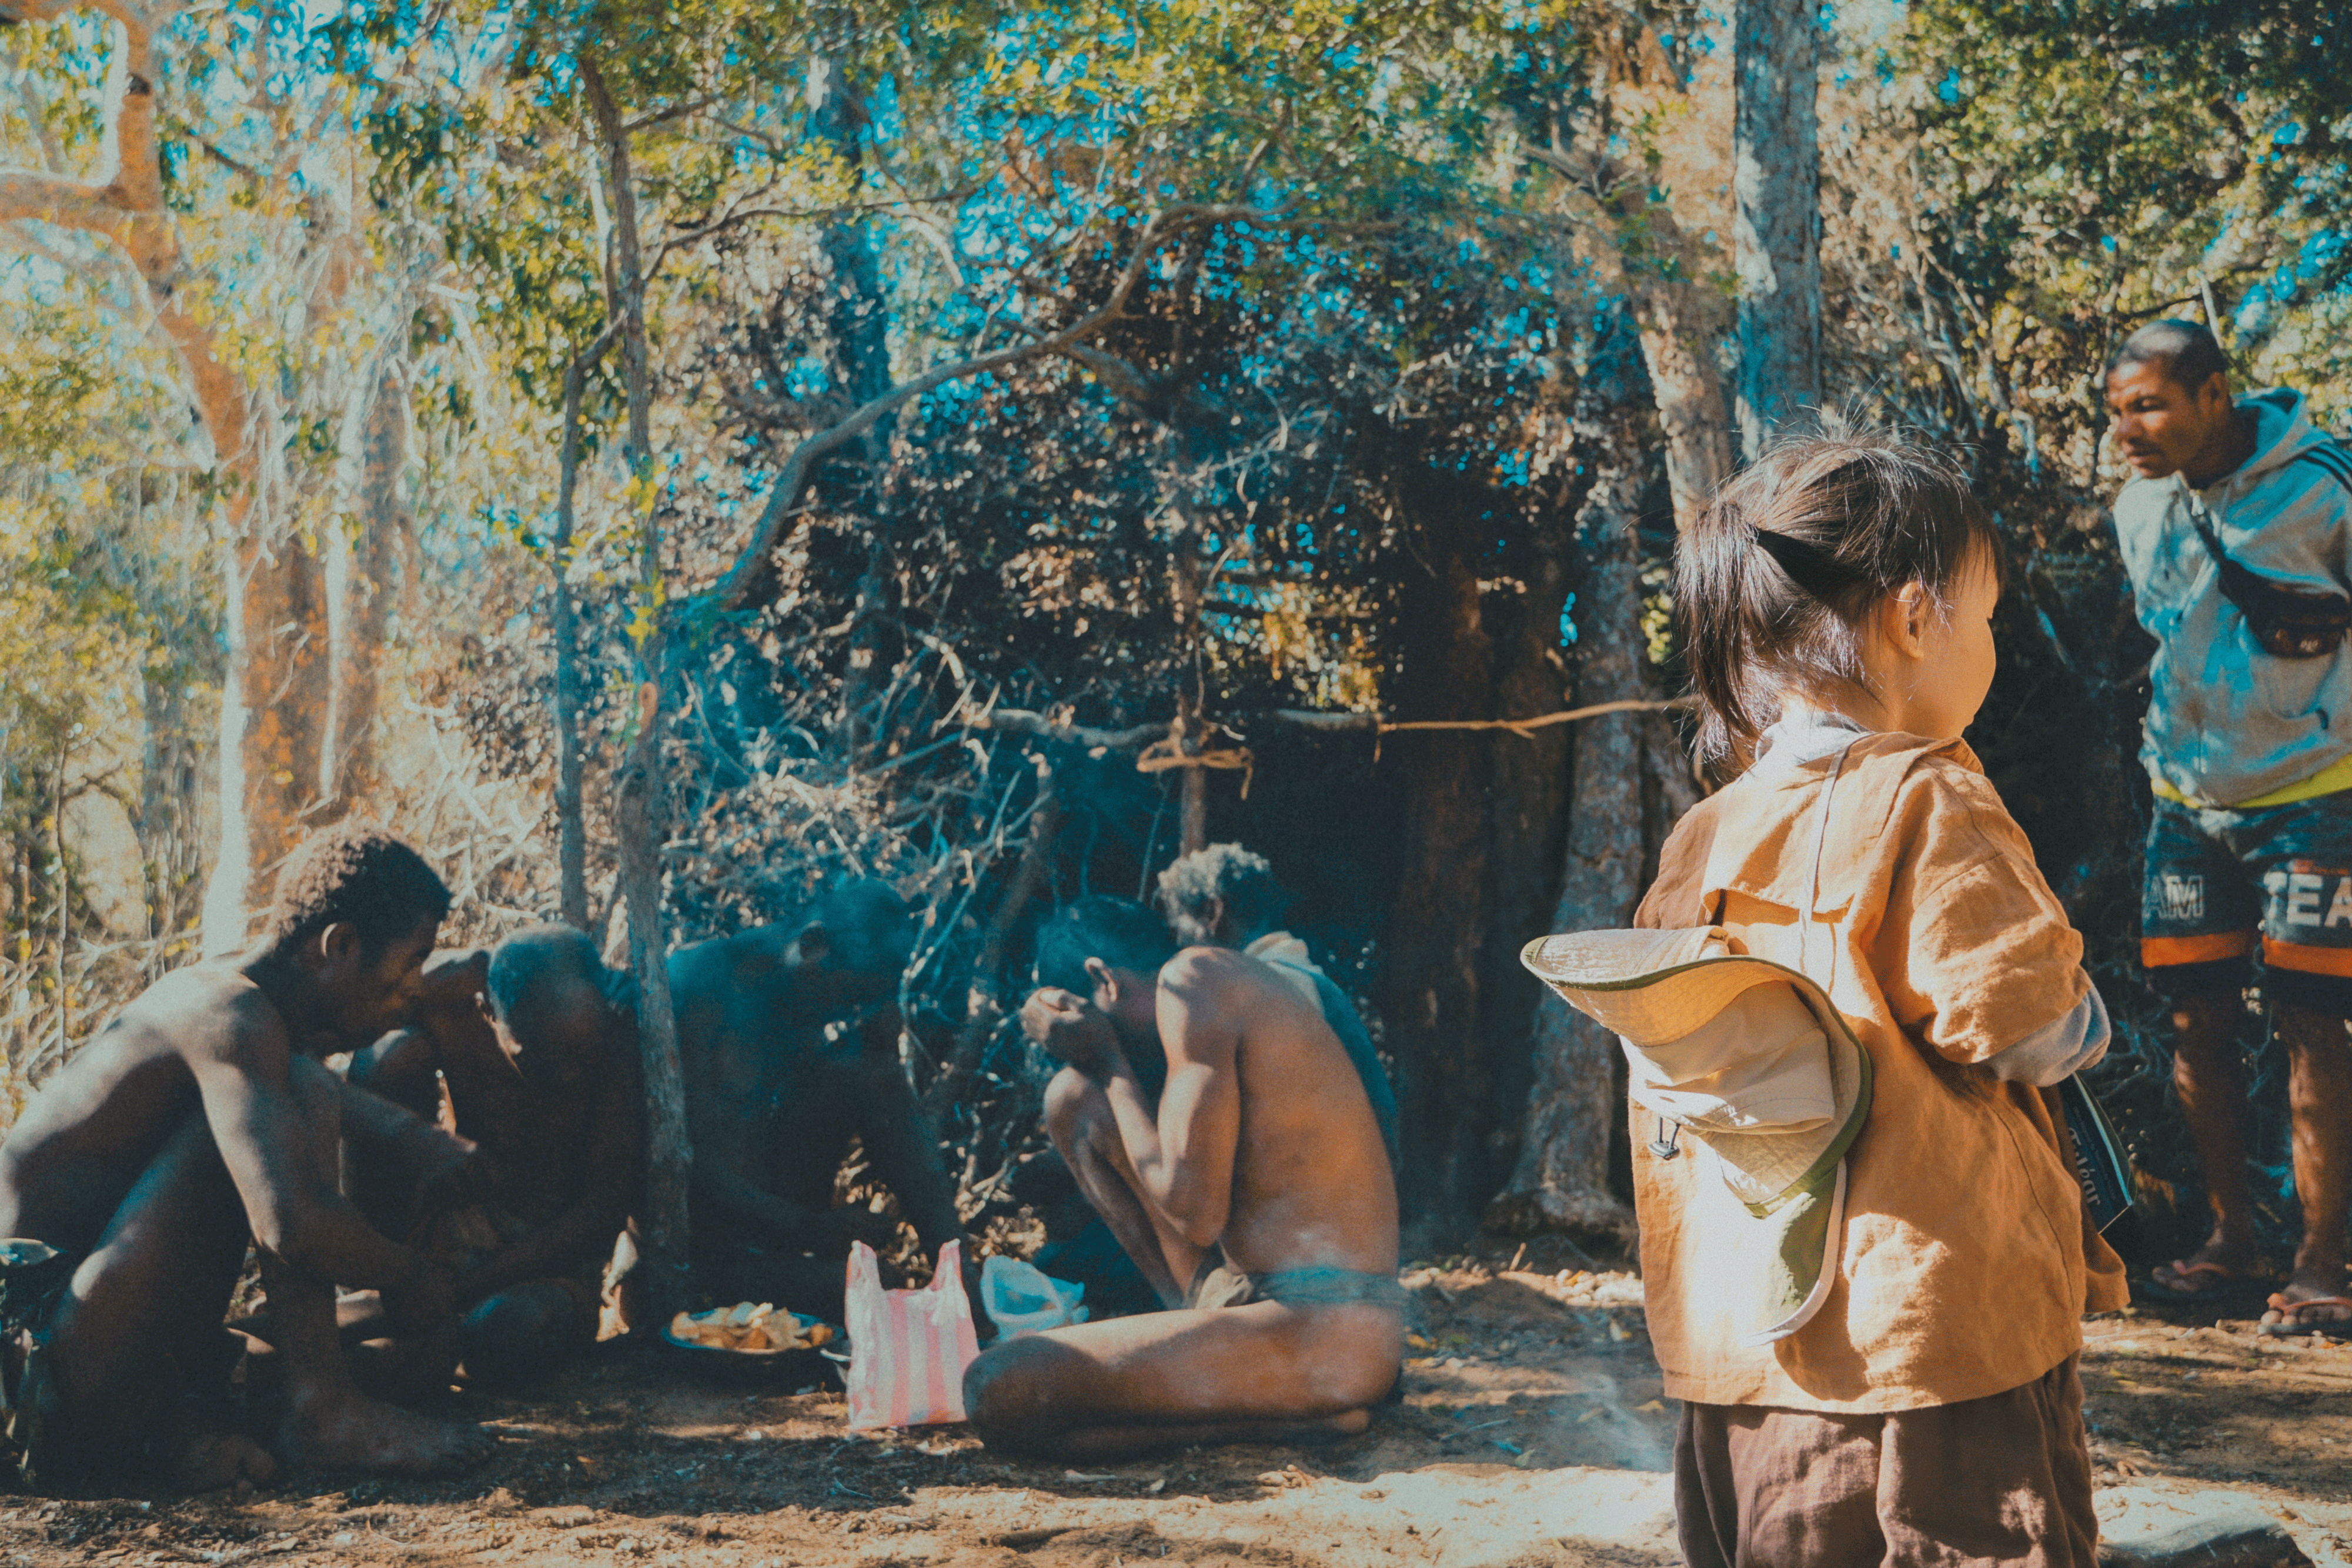 Gặp những người trong bộ tộc Mikea, bên góc phải là Rah - thành viên duy nhất của bộ tộc từ bỏ lối sống nguyên thủy. Ảnh: Nhân vật cung cấp